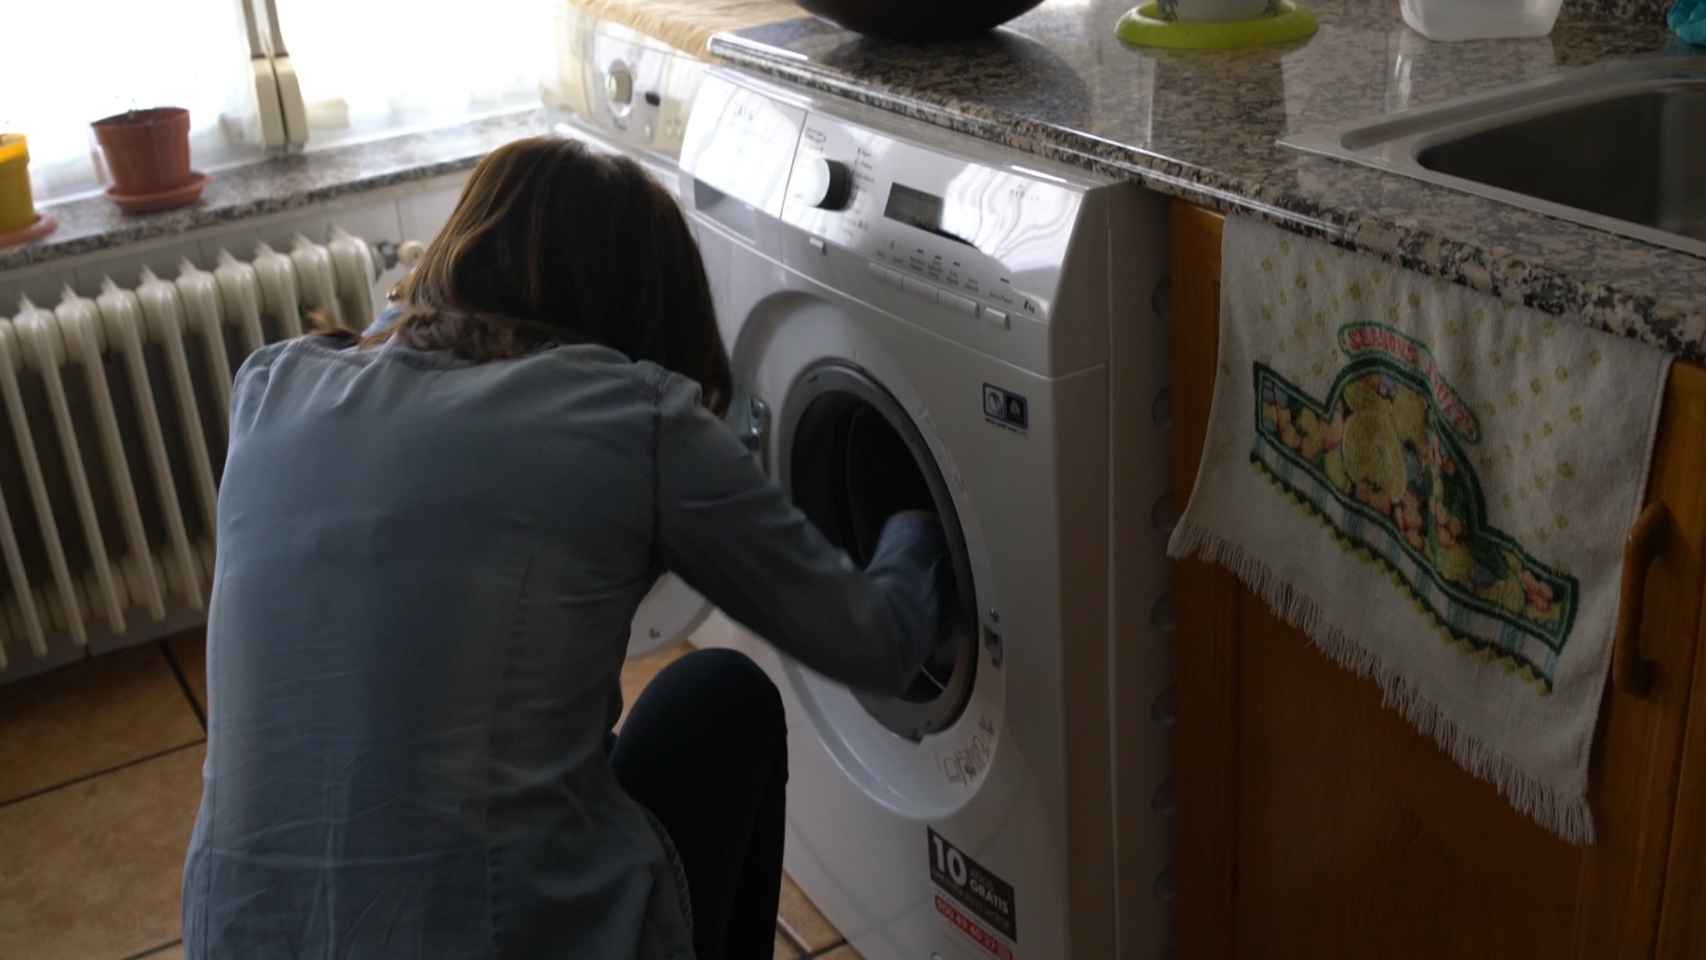 Inma pone la lavadora.